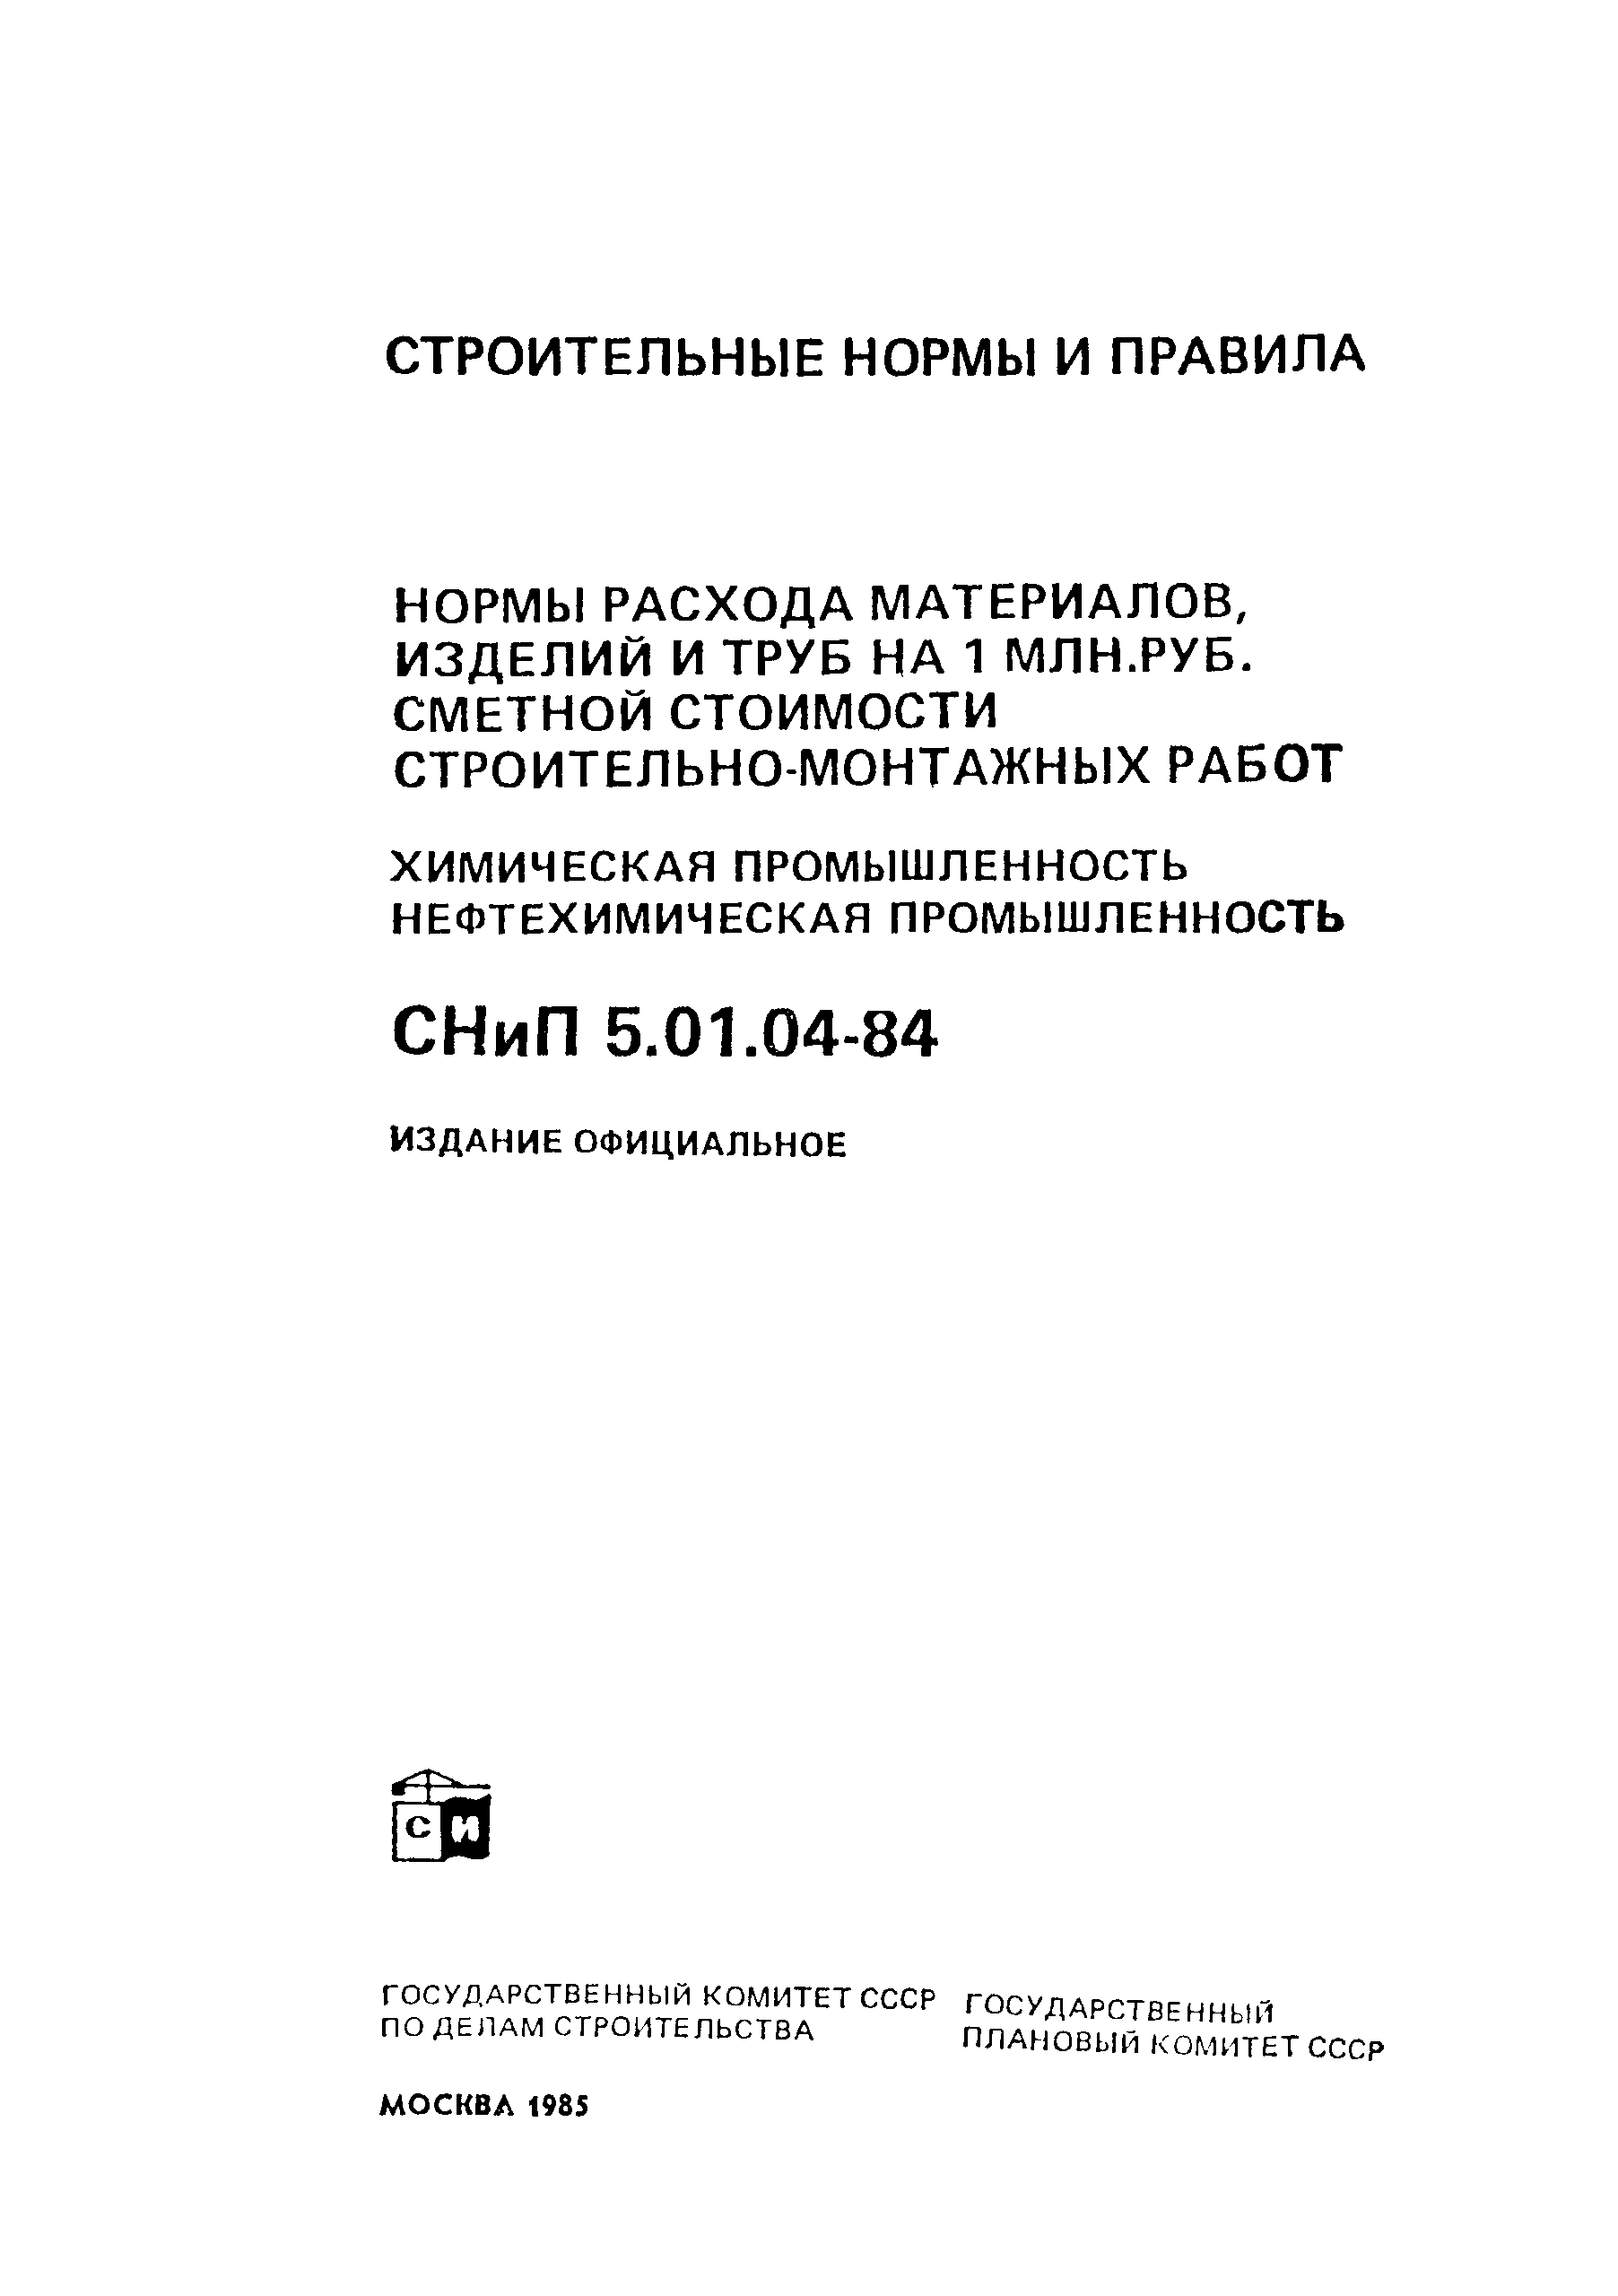 СНиП 5.01.04-84